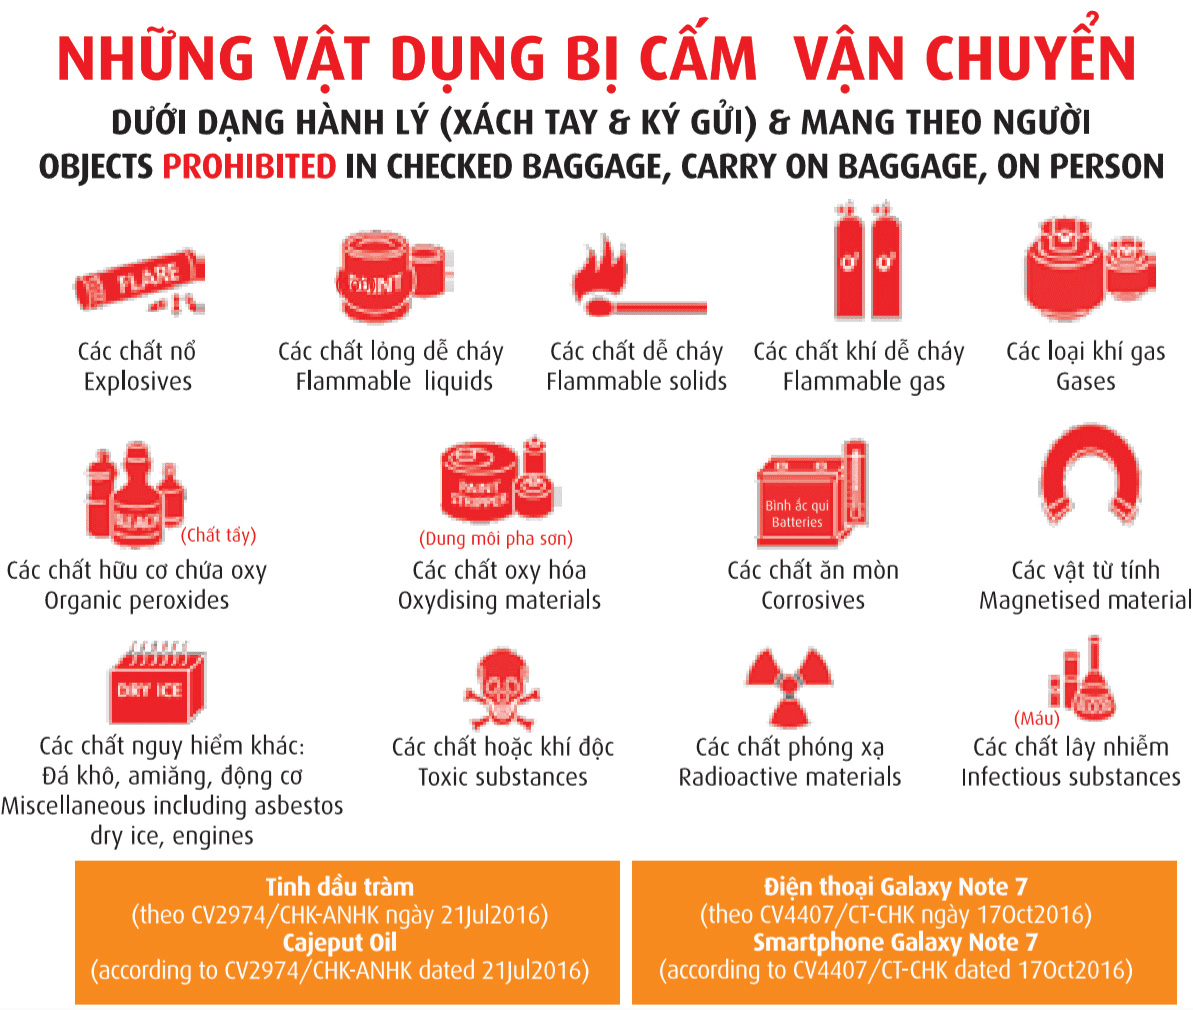 Hành lý Vietjet Air - vật phẩm cấm vận chuyển trong hành lý xách tay và ký gửi